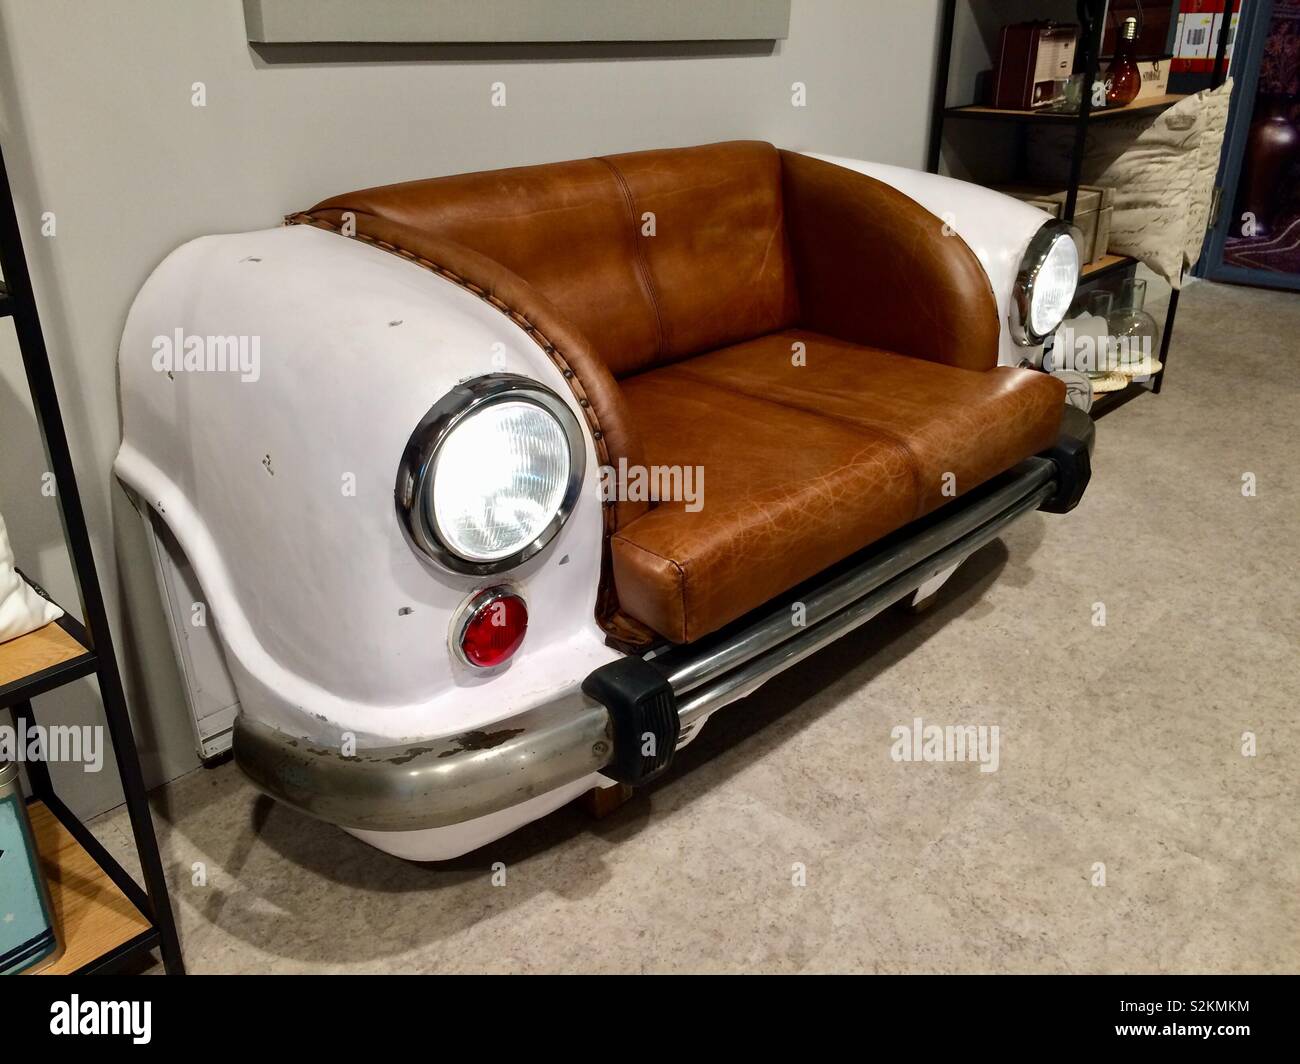 Sehr teure Sofa in der Form von retro Auto vorne in einem Möbelgeschäft  Stockfotografie - Alamy